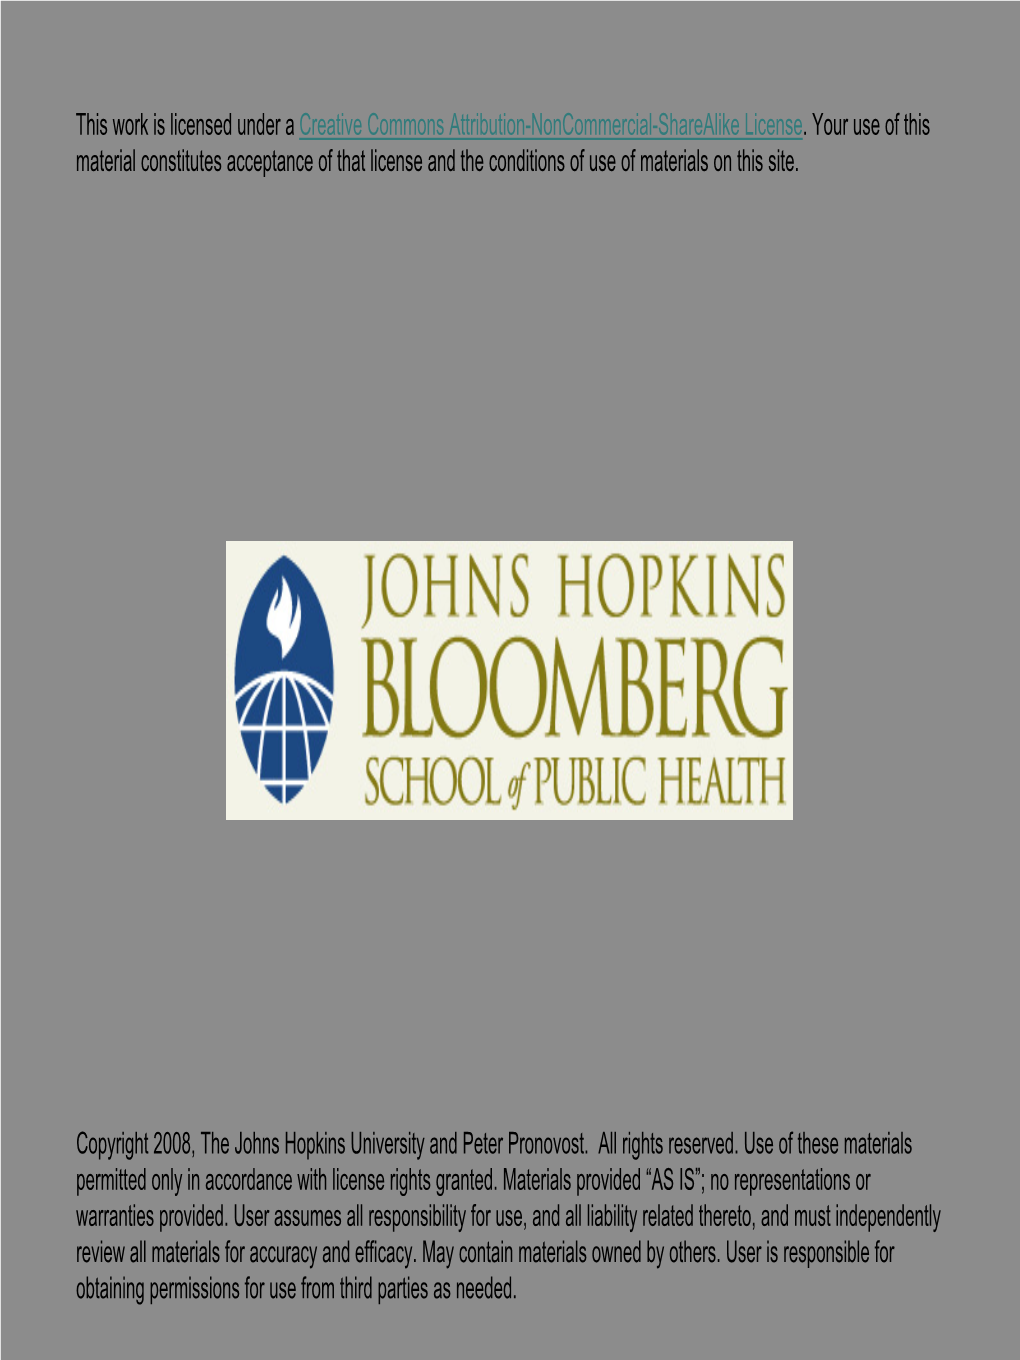 Johns Hopkins Medicine Board of Trustees Briefing